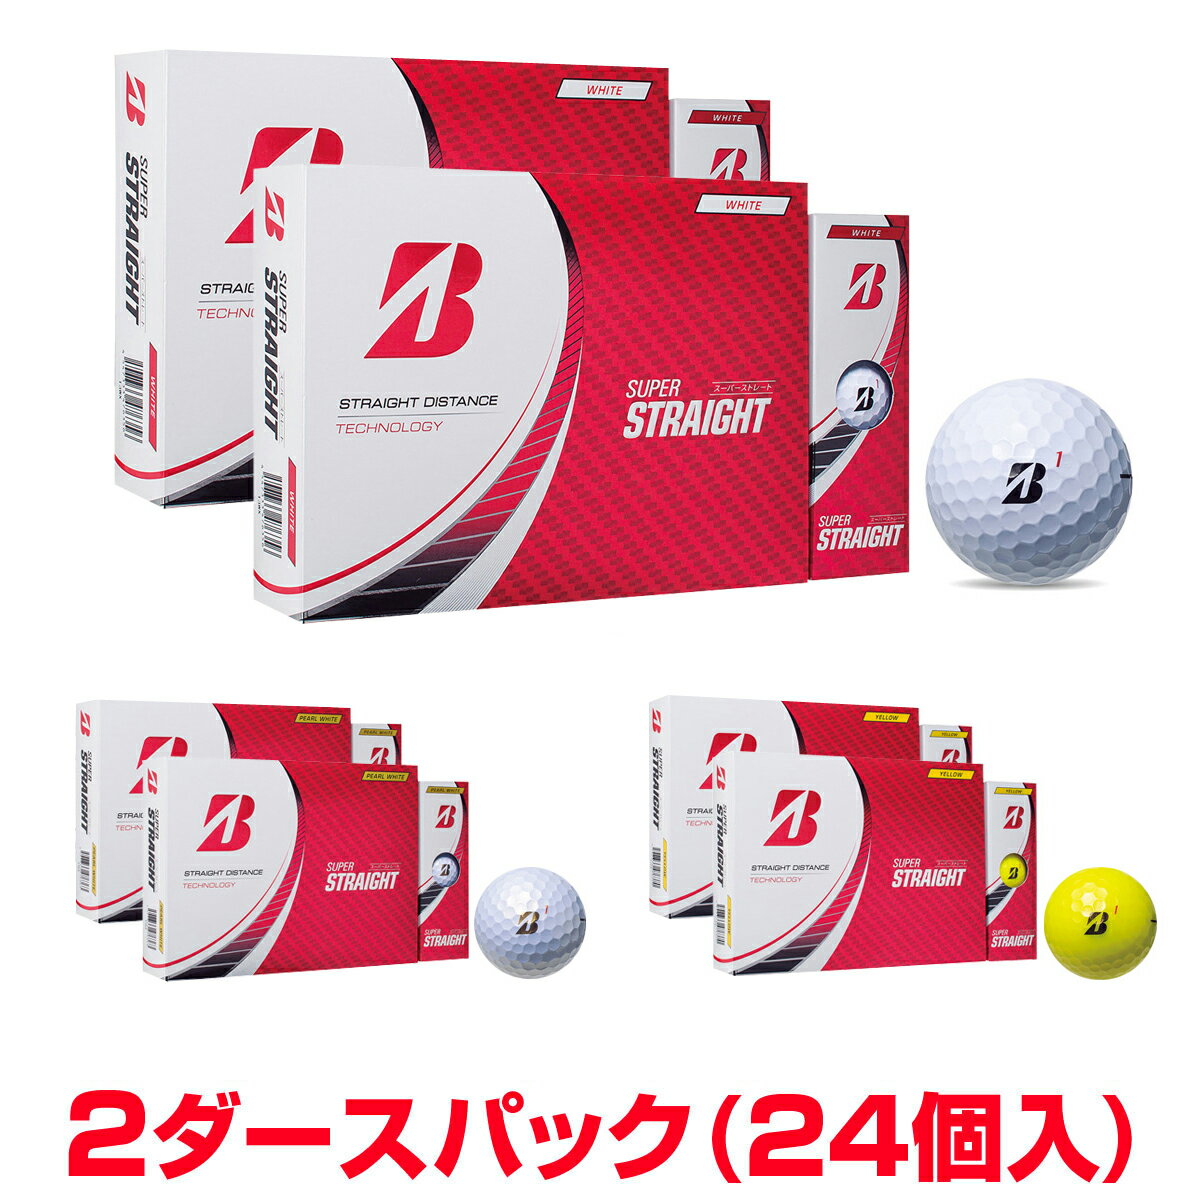 BRIDGESTONE GOLF ブリヂストンゴルフ日本正規品 SUPER STRAIGHT (スーパーストレート) 2023モデル ゴルフボール2ダースパック(24個入) 